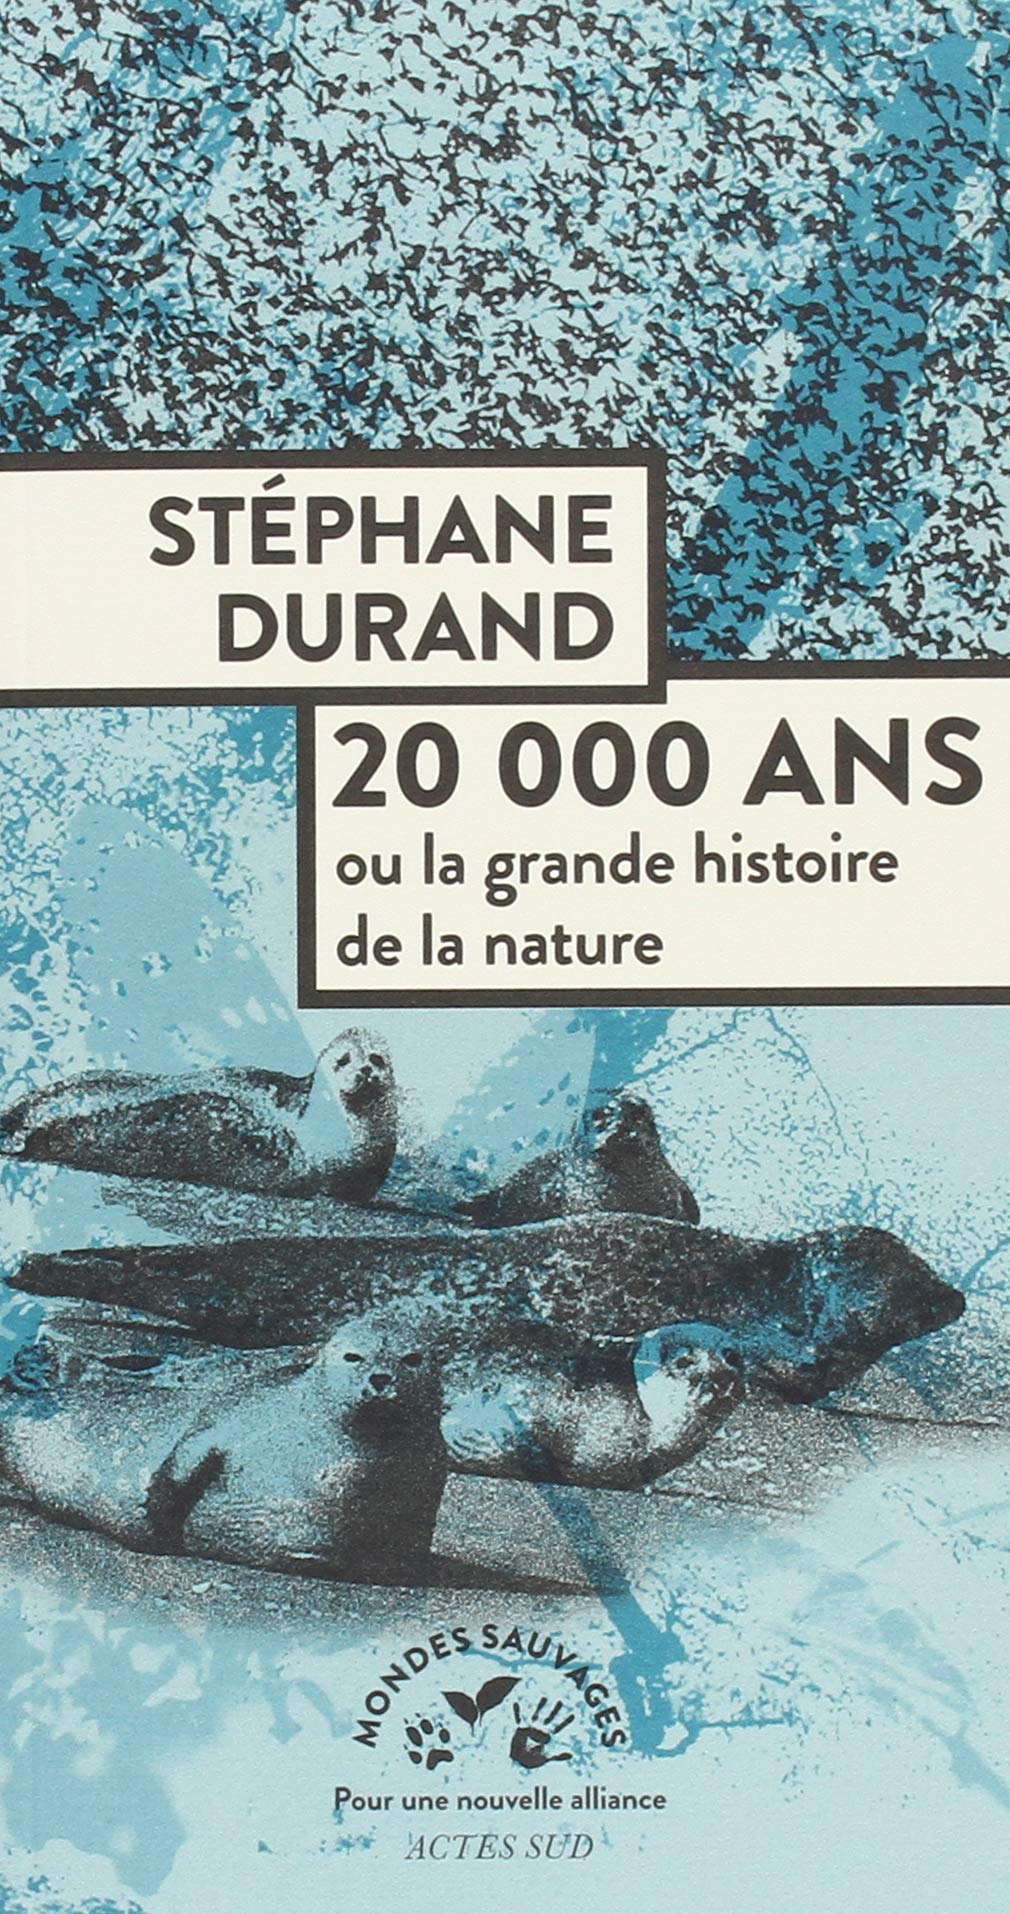 20 000 ans ou la grande histoire de la nature, 2018, 256 p.